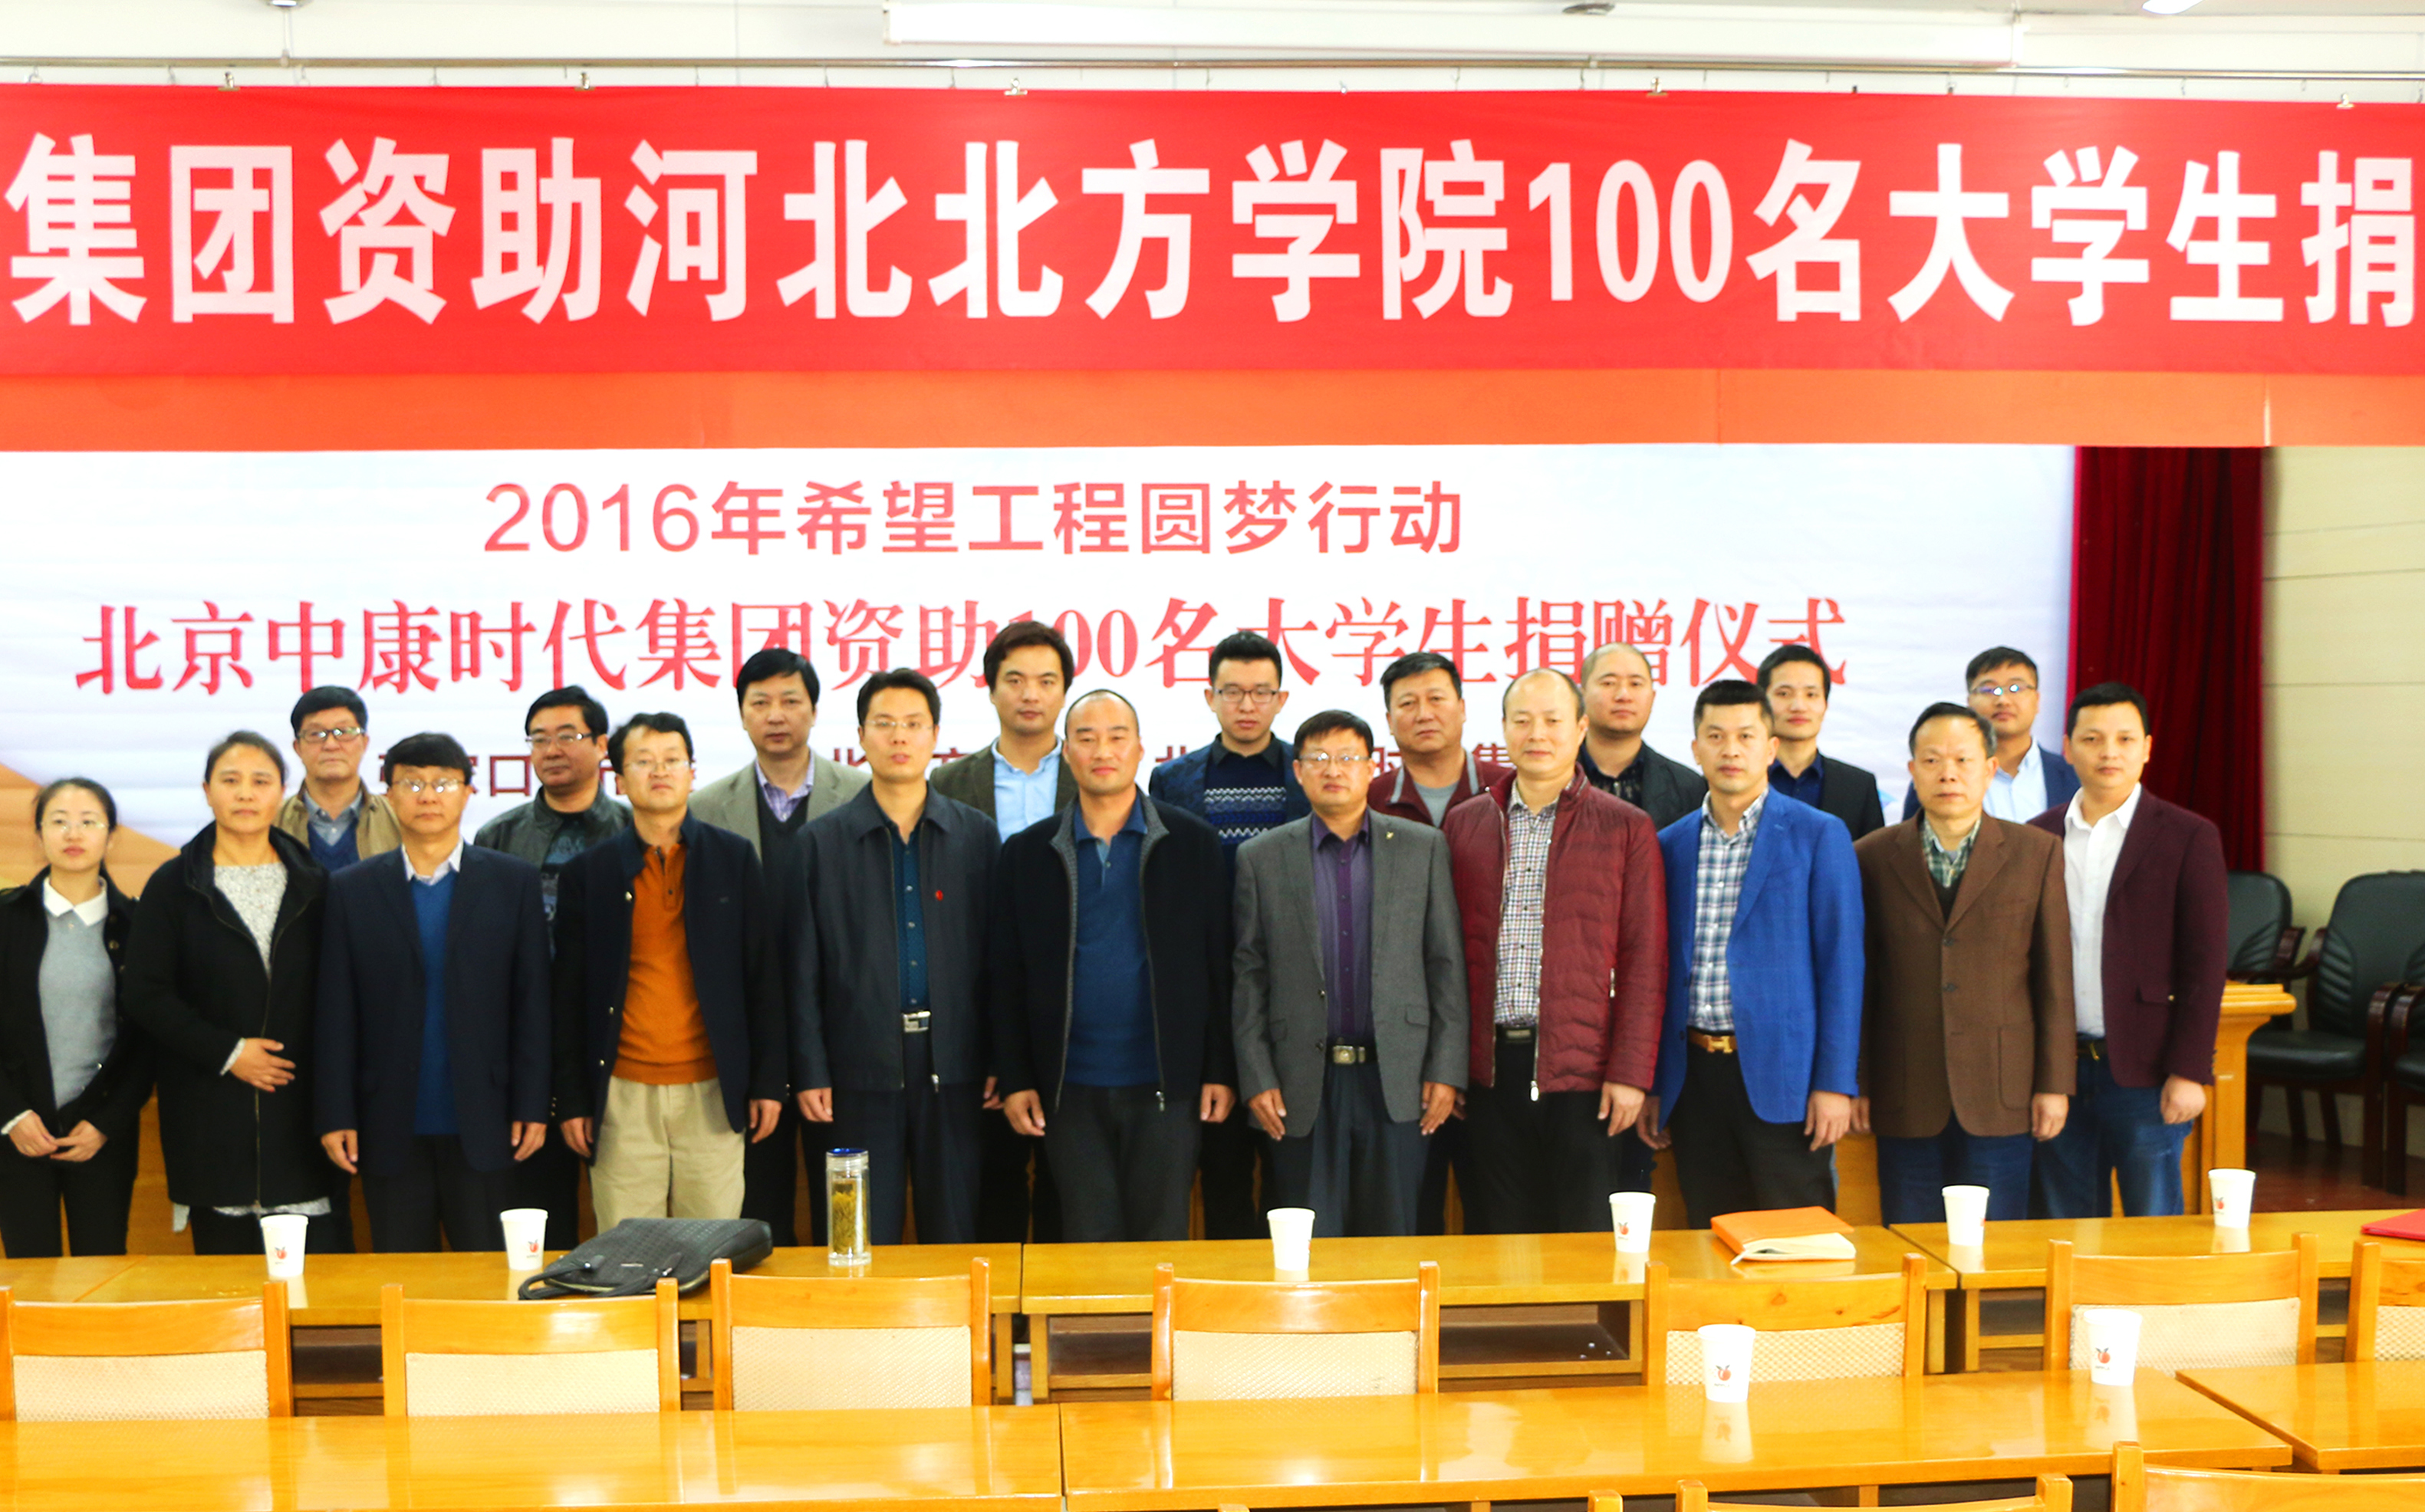 资助学子圆梦 点燃爱的希望 ——北京中康时代集团2016年资助100名大学生捐赠仪式在河北北方学院隆重举行